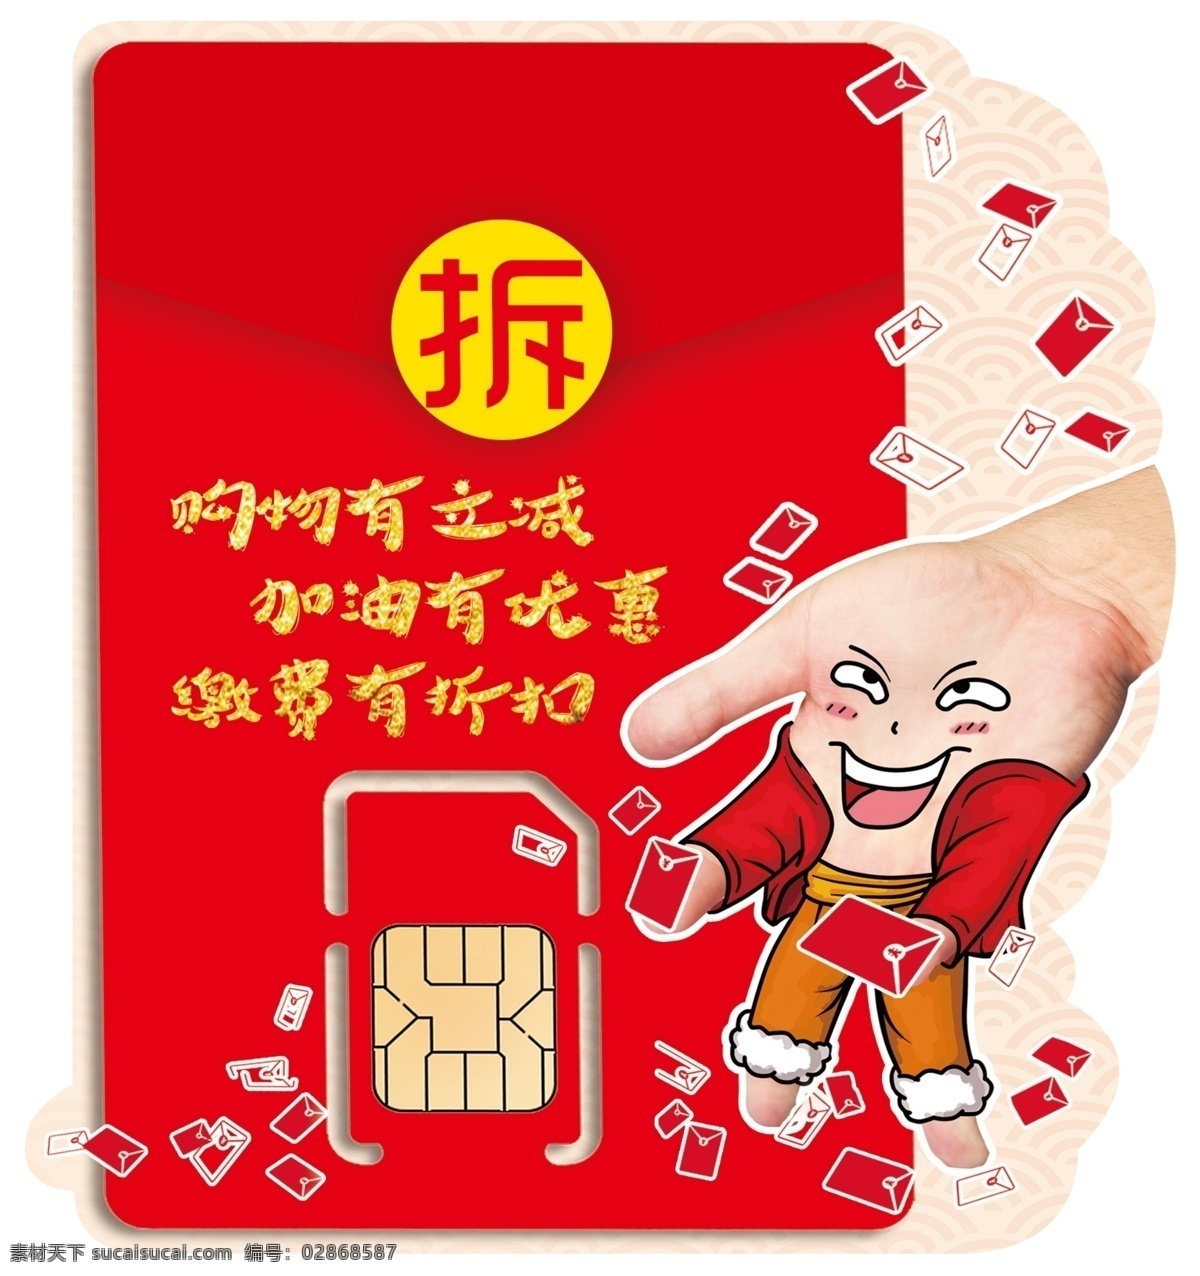 中国电信 红包卡 价签 折扣 满立减 购机 加油 购物 缴费 优惠 电信红包卡 伴 生活 天